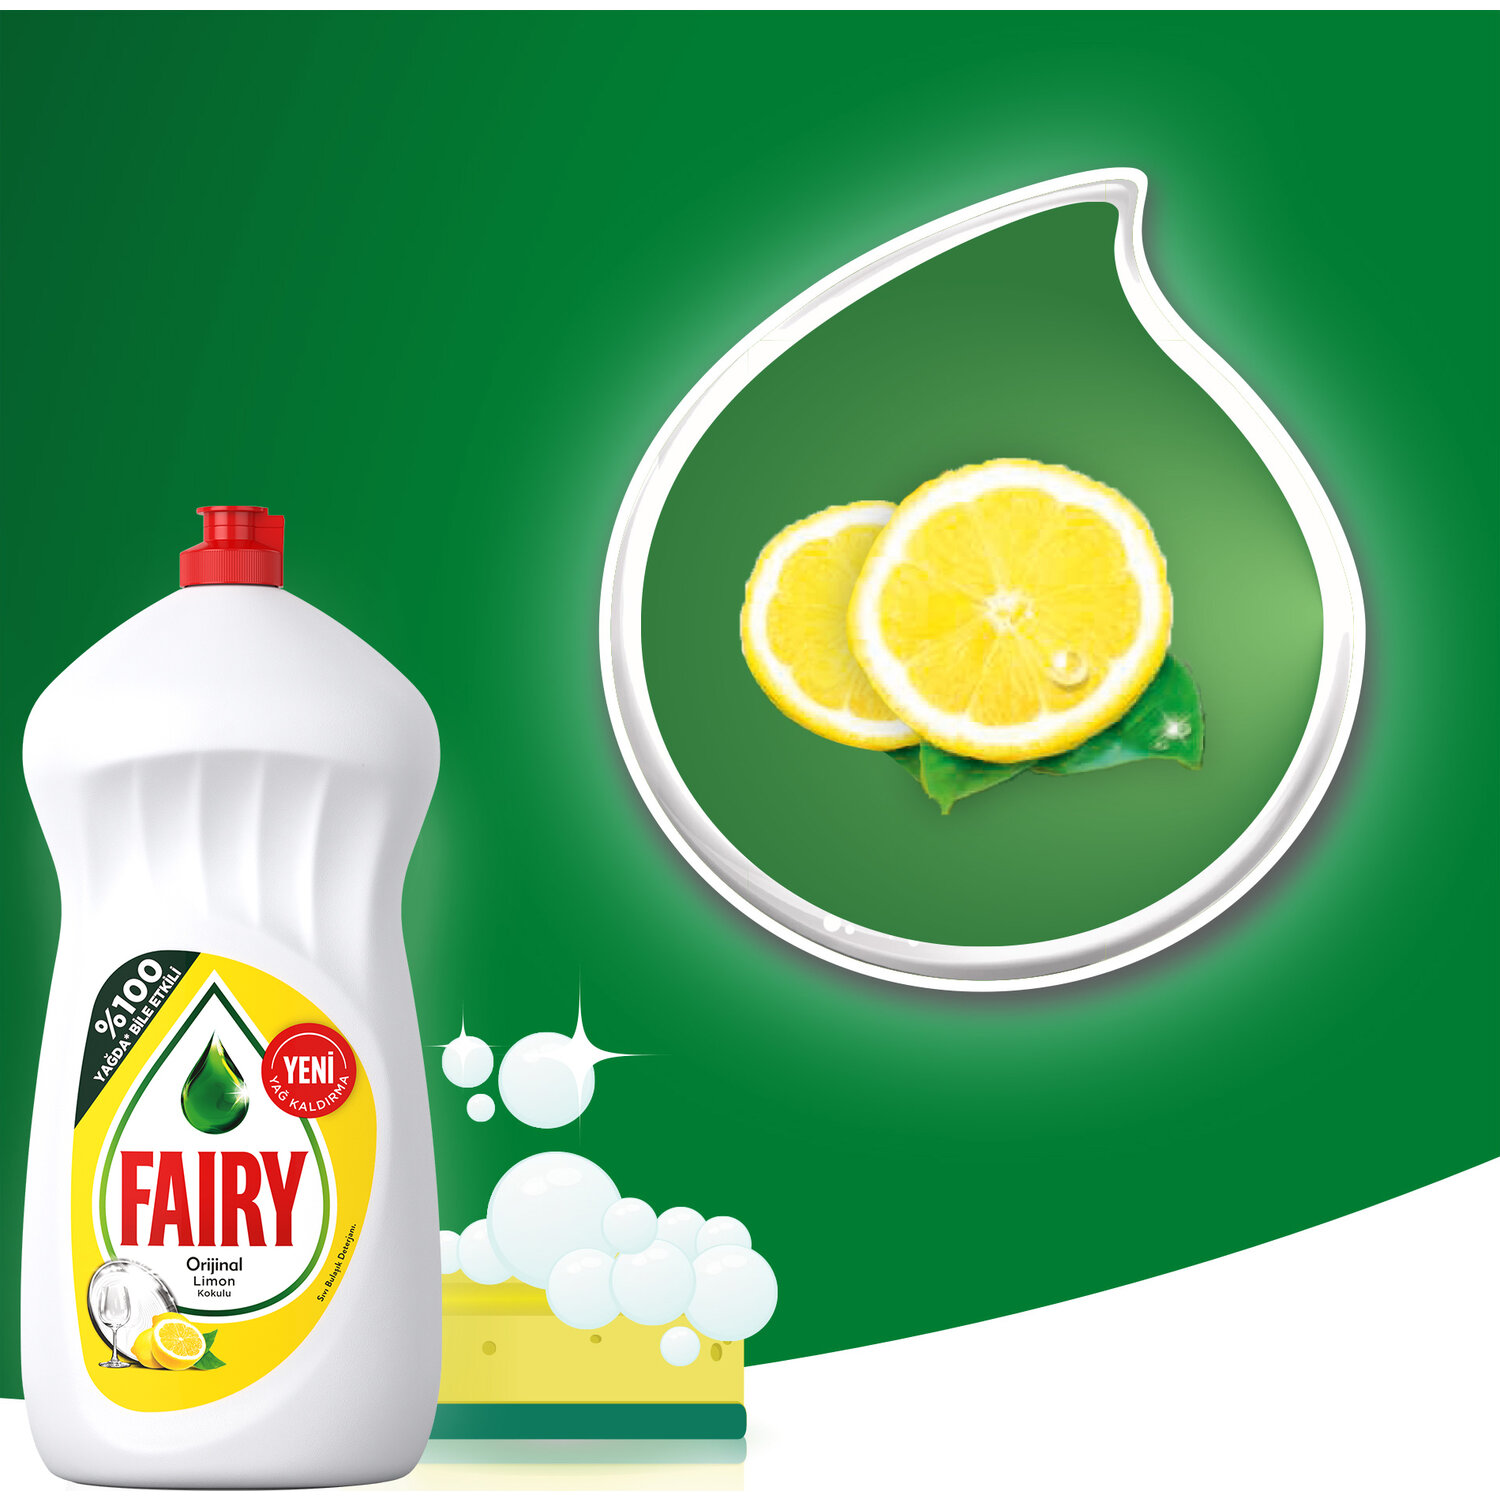 Средство для мытья посуды сочный лимон. Фейри сочный лимон 1.35. Средство для мытья посуды "Fairy" "сочный лимон", 1.35л. Фейри 1350 мл. Фейри сочный лимон 1350.